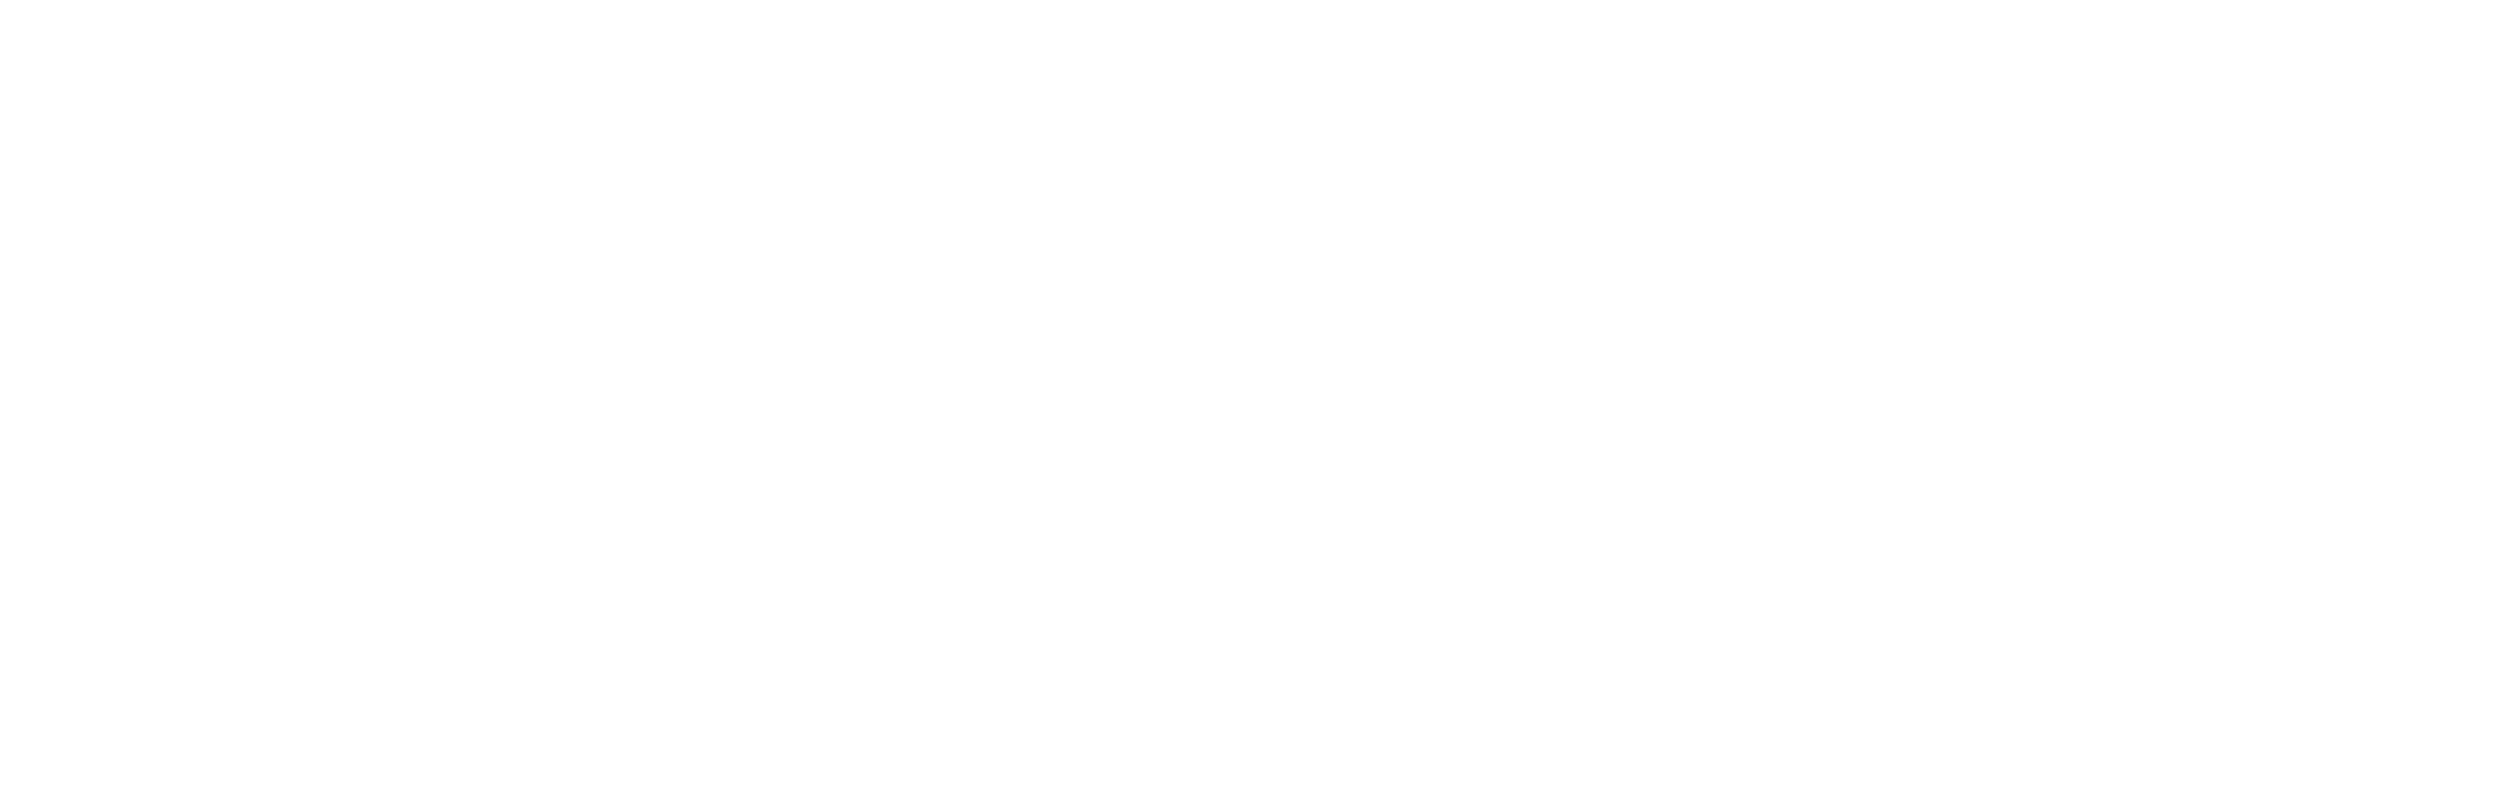 logo Mideplan